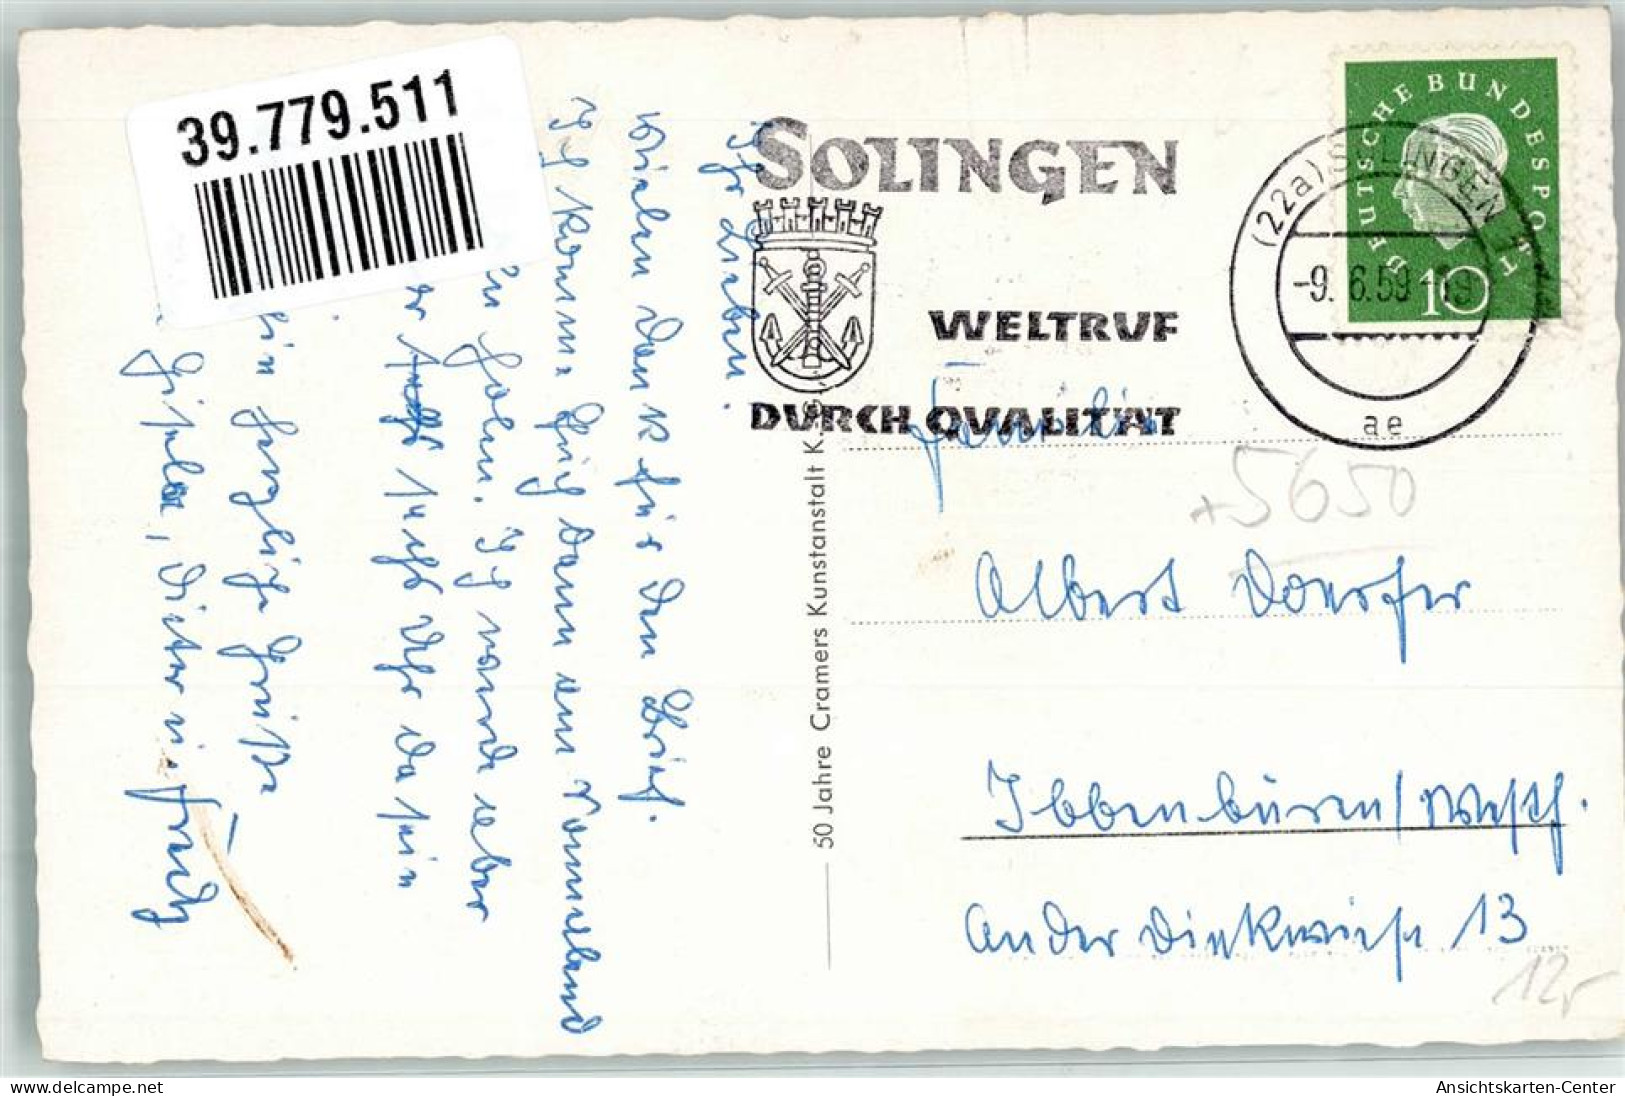 39779511 - Solingen - Solingen